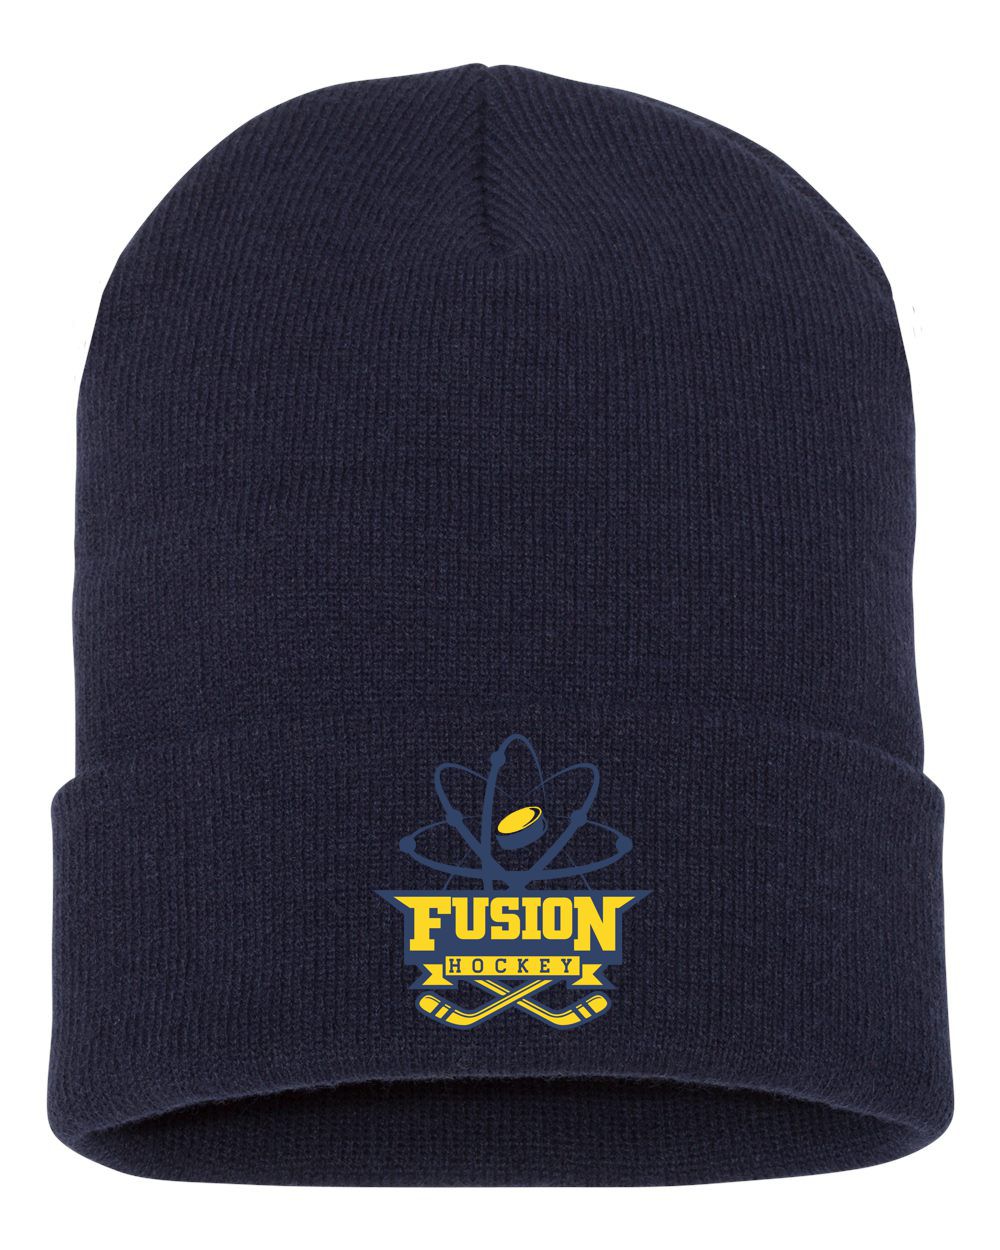 Fusion Stocking Cap